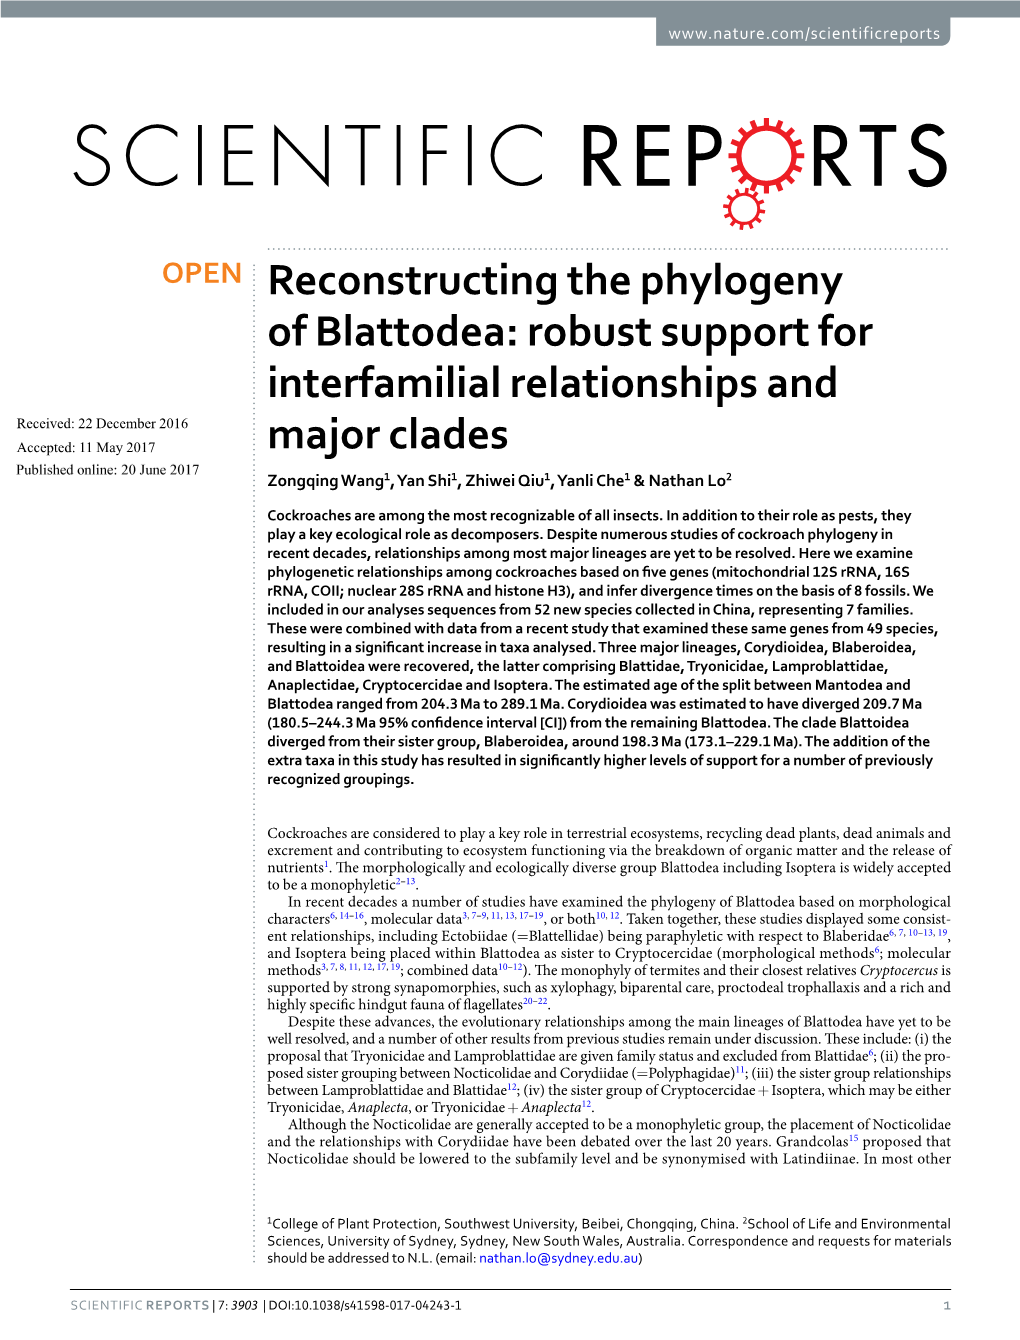 Reconstructing the Phylogeny of Blattodea